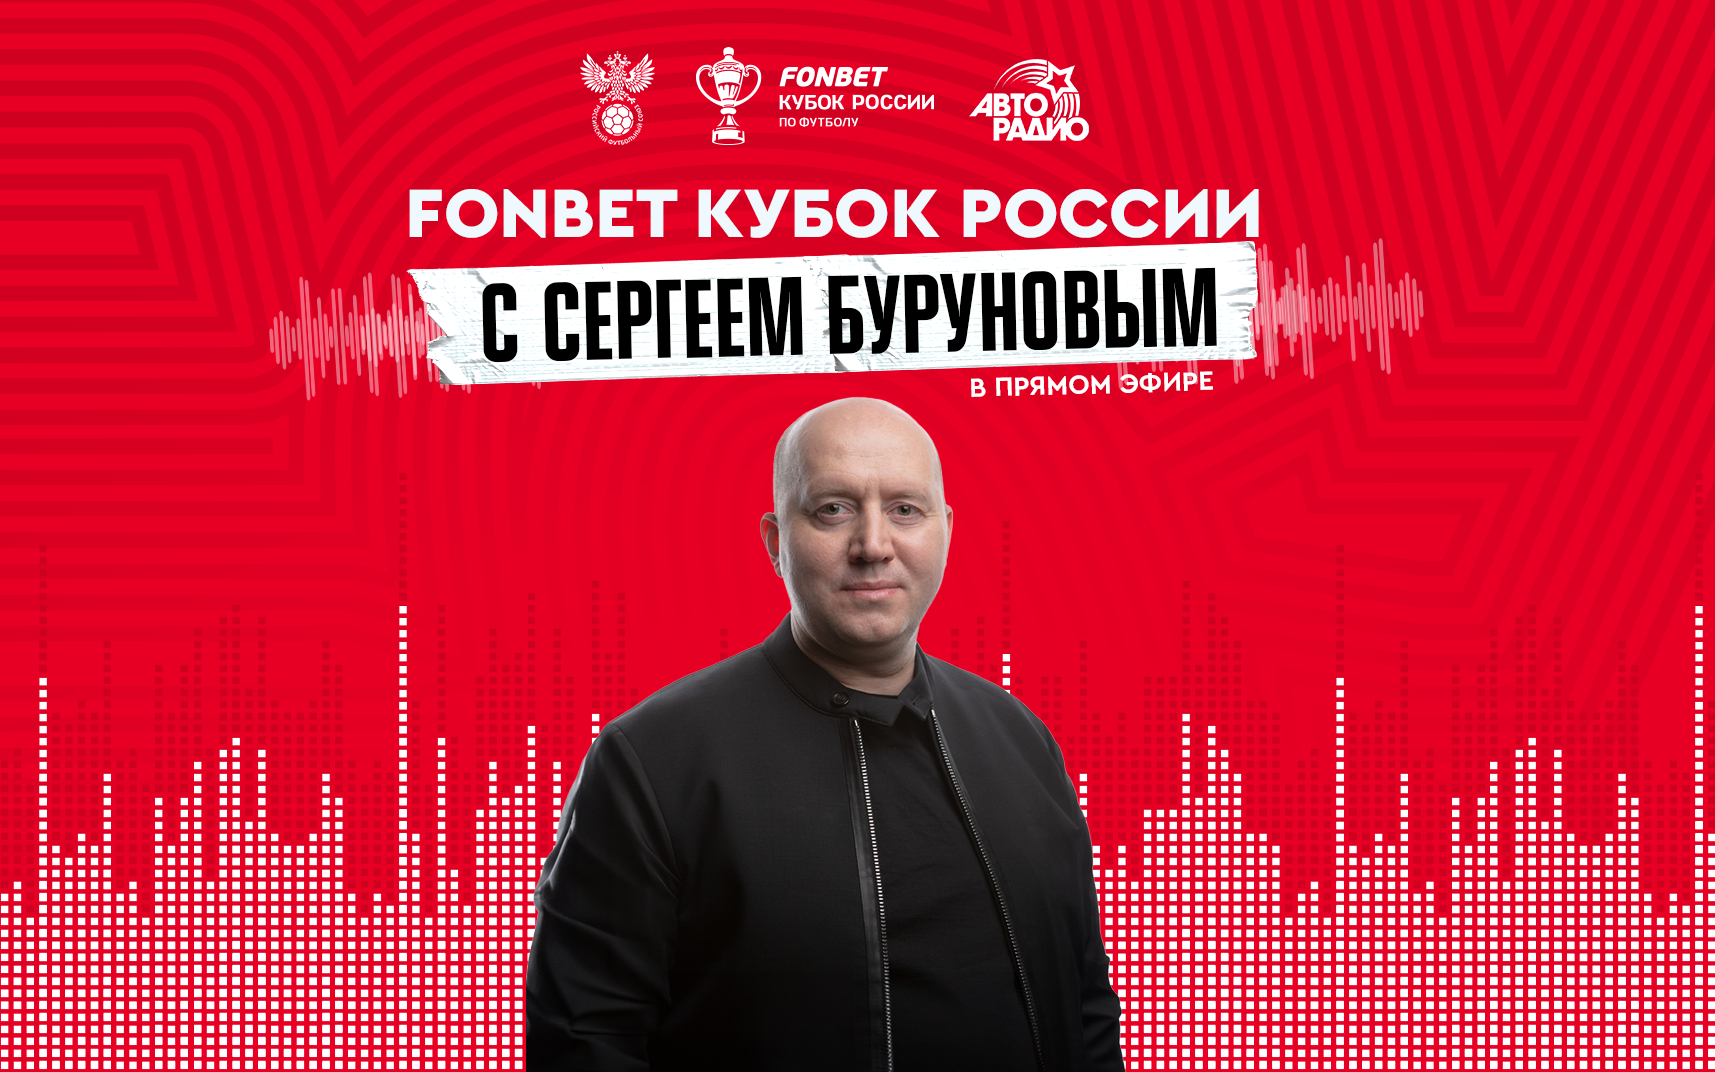 Сергей Бурунов стал гостем программы «Фонбет» — Кубок России на Авторадио